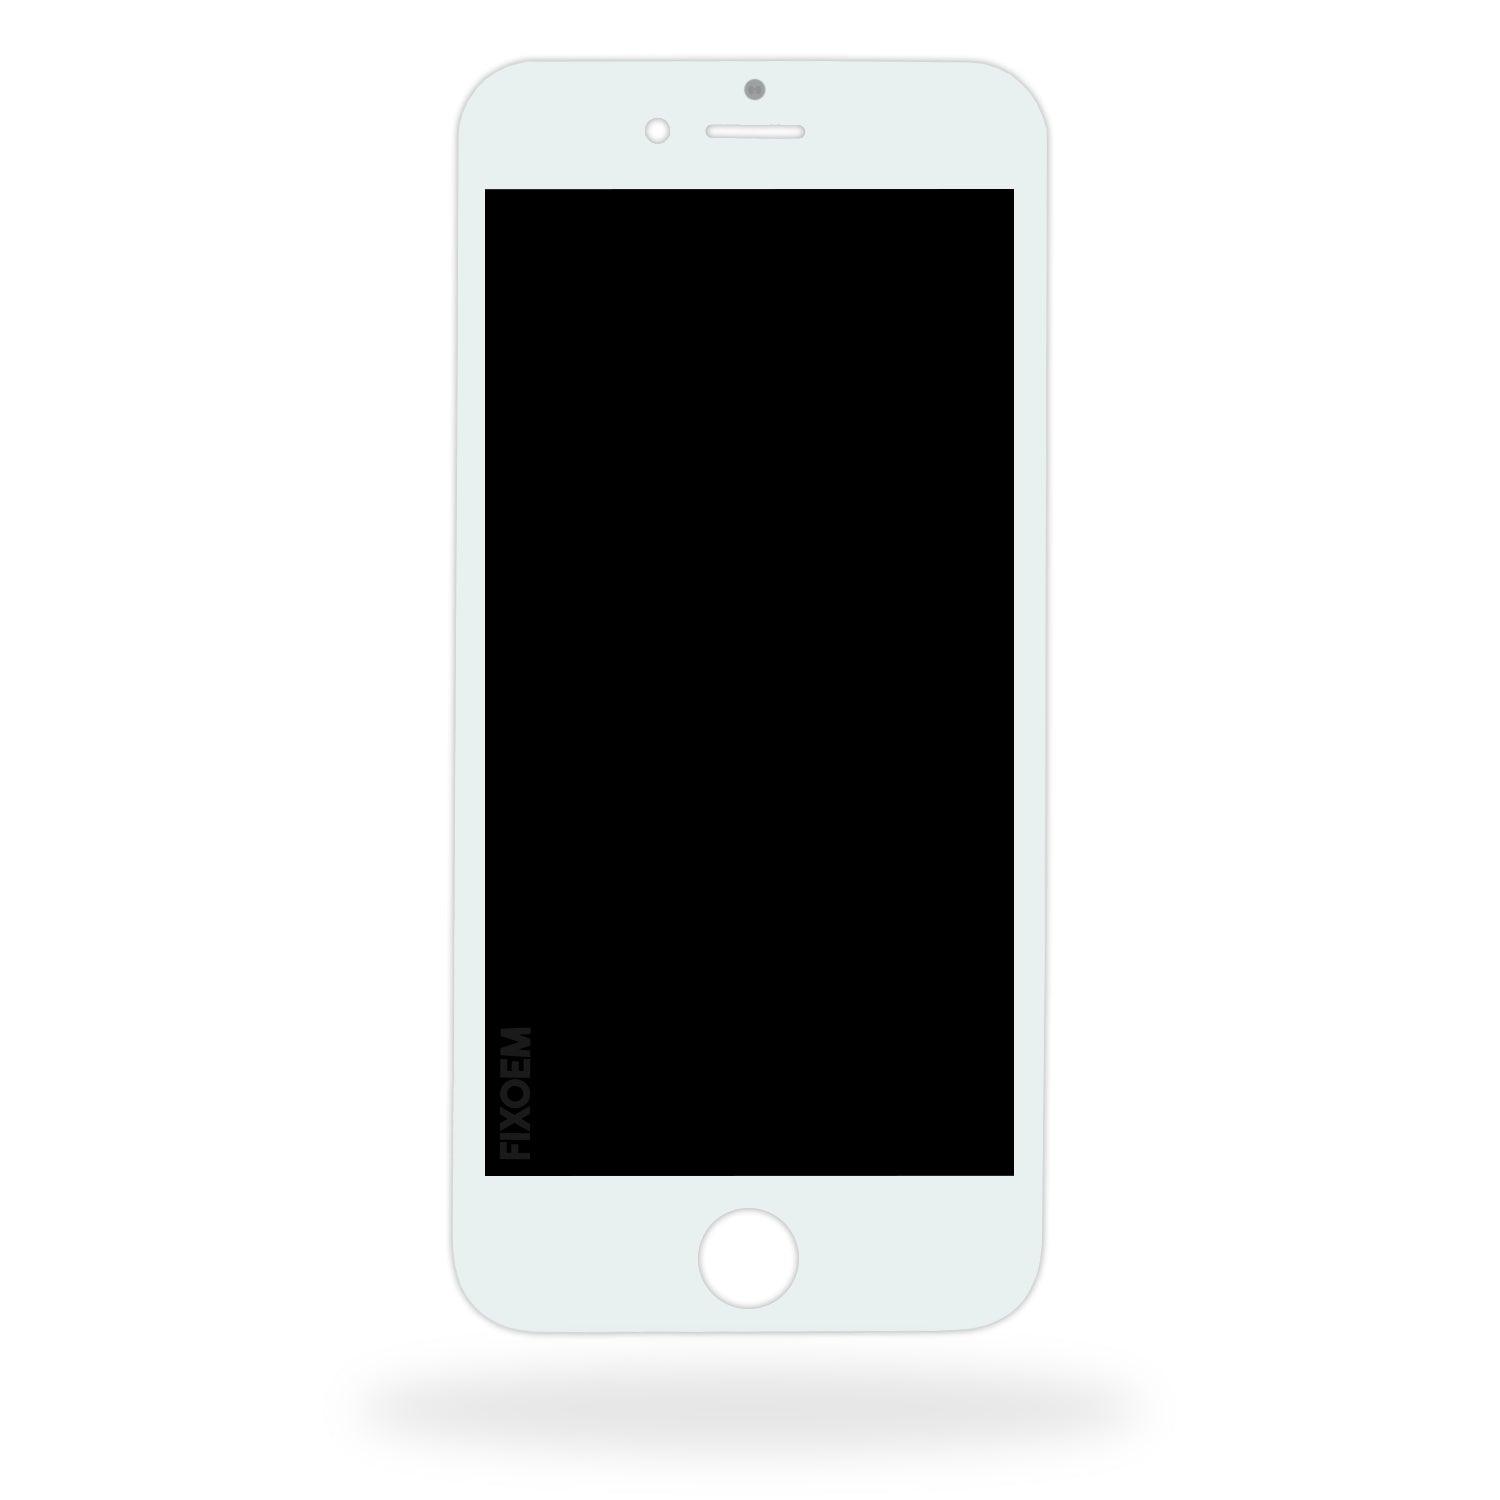 Display Iphone 6 A1549 A1586. a solo $ 250.00 Refaccion y puestos celulares, refurbish y microelectronica.- FixOEM